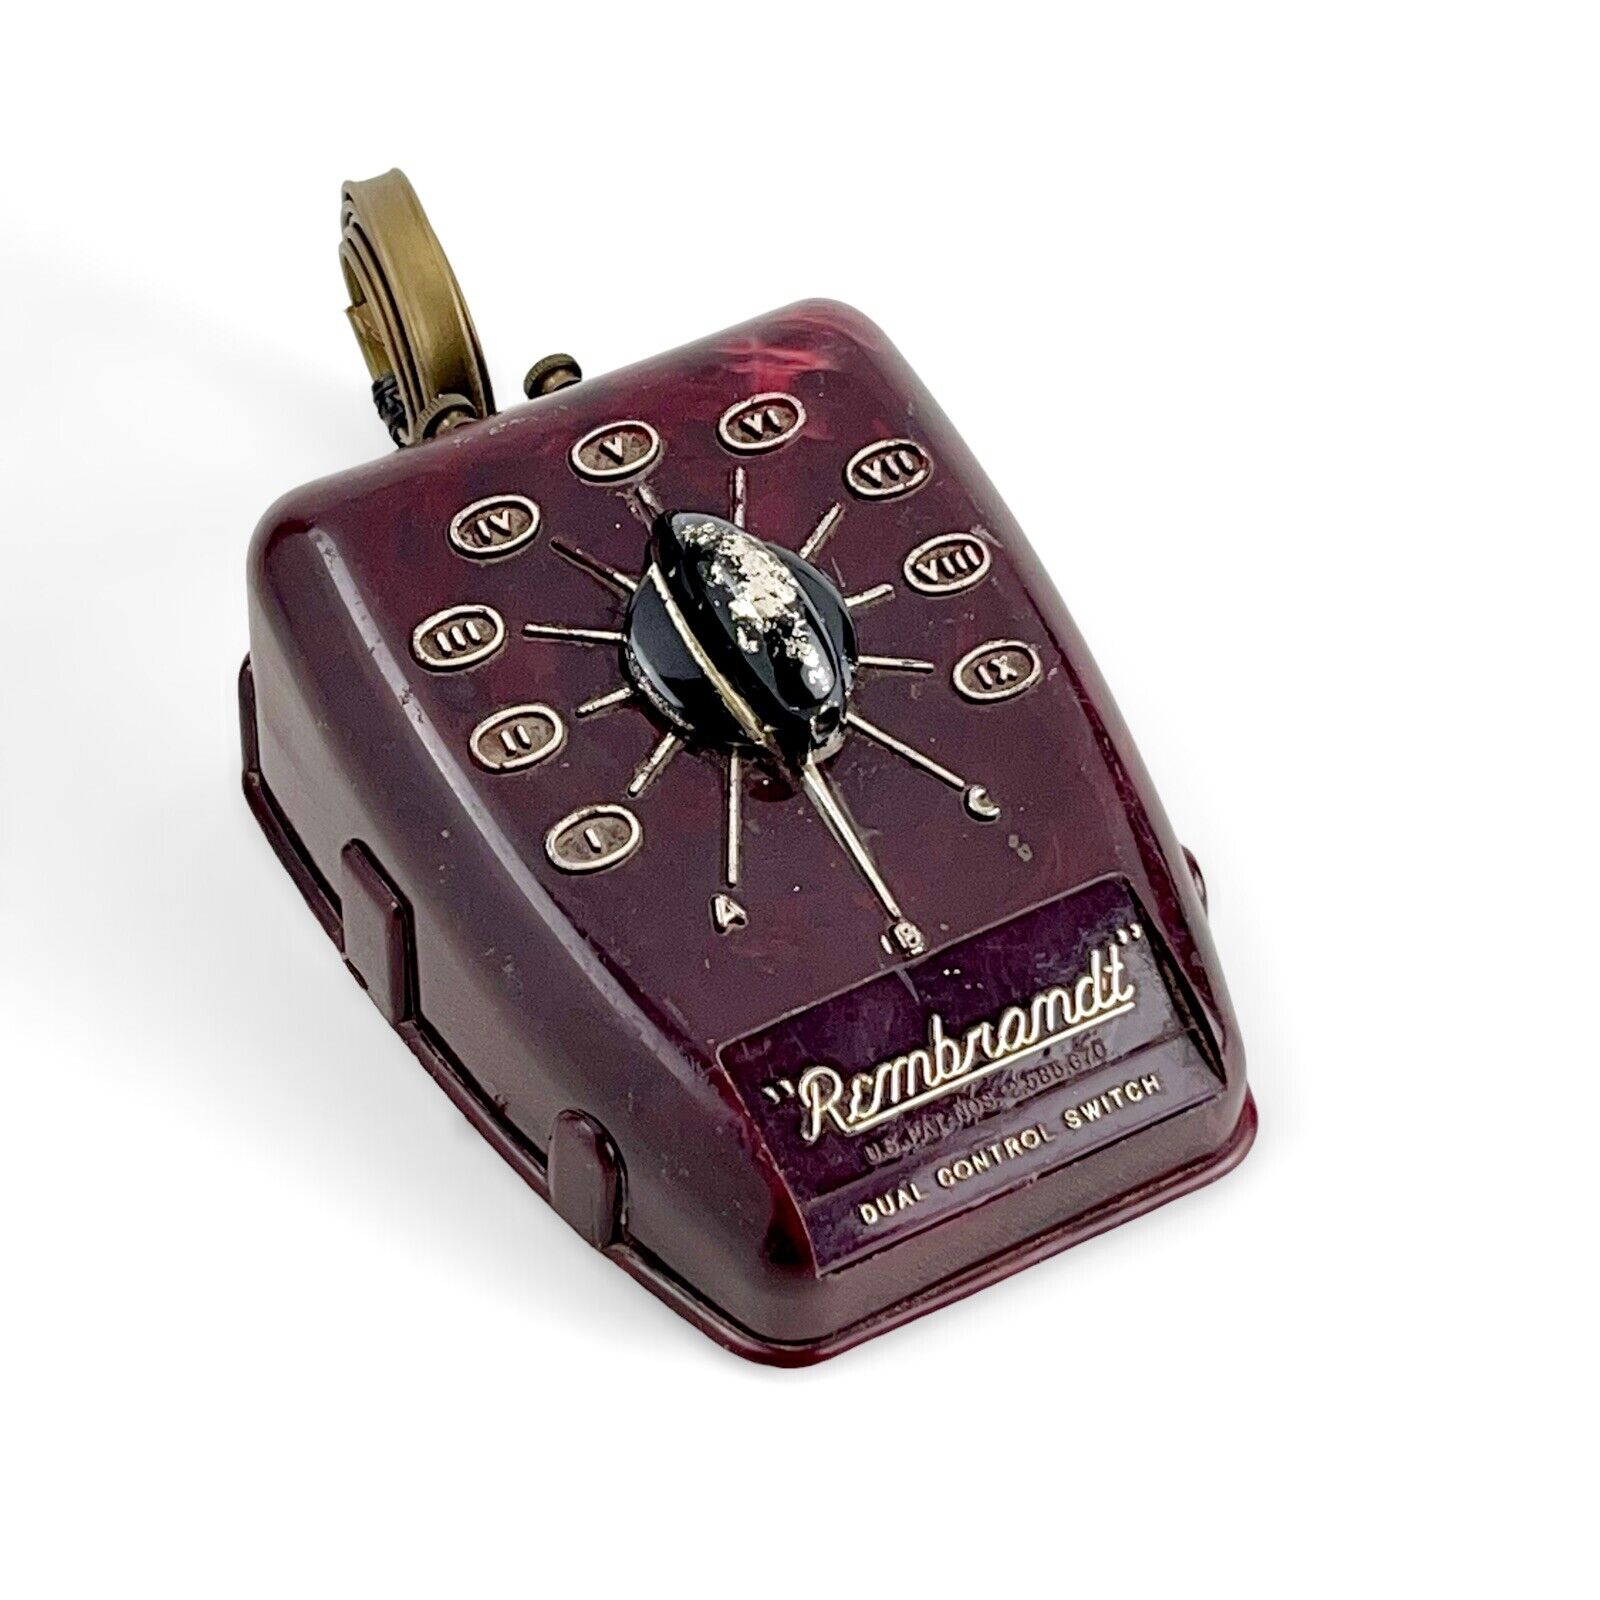 Antique Bakelite(?) “Rembrandt “ Dual Control Switch ex vintage cond #818